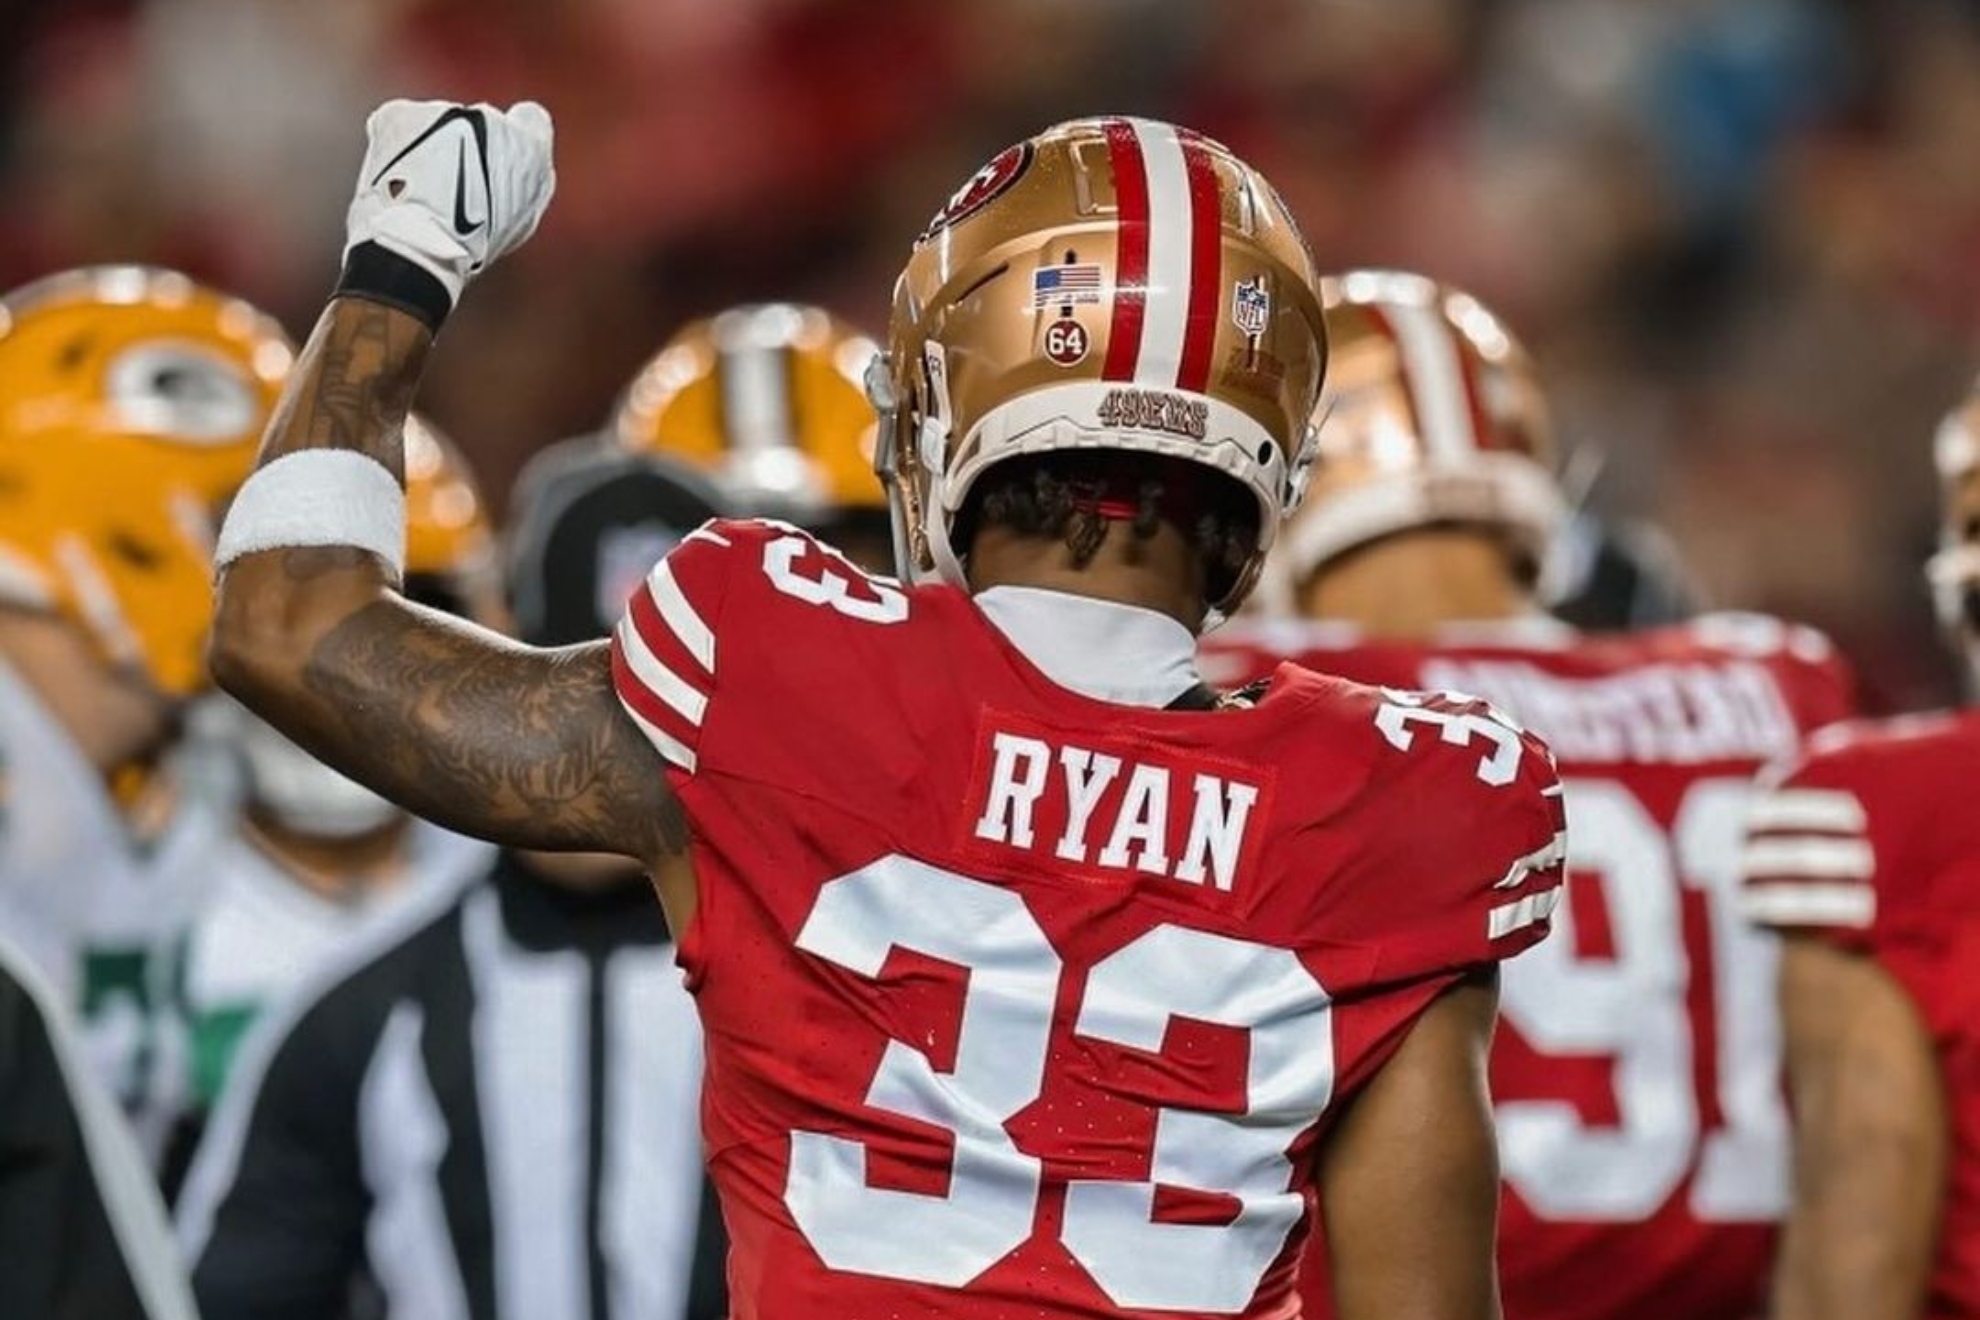 NFL veteran Logan Ryan calls it quits after 11 seasons